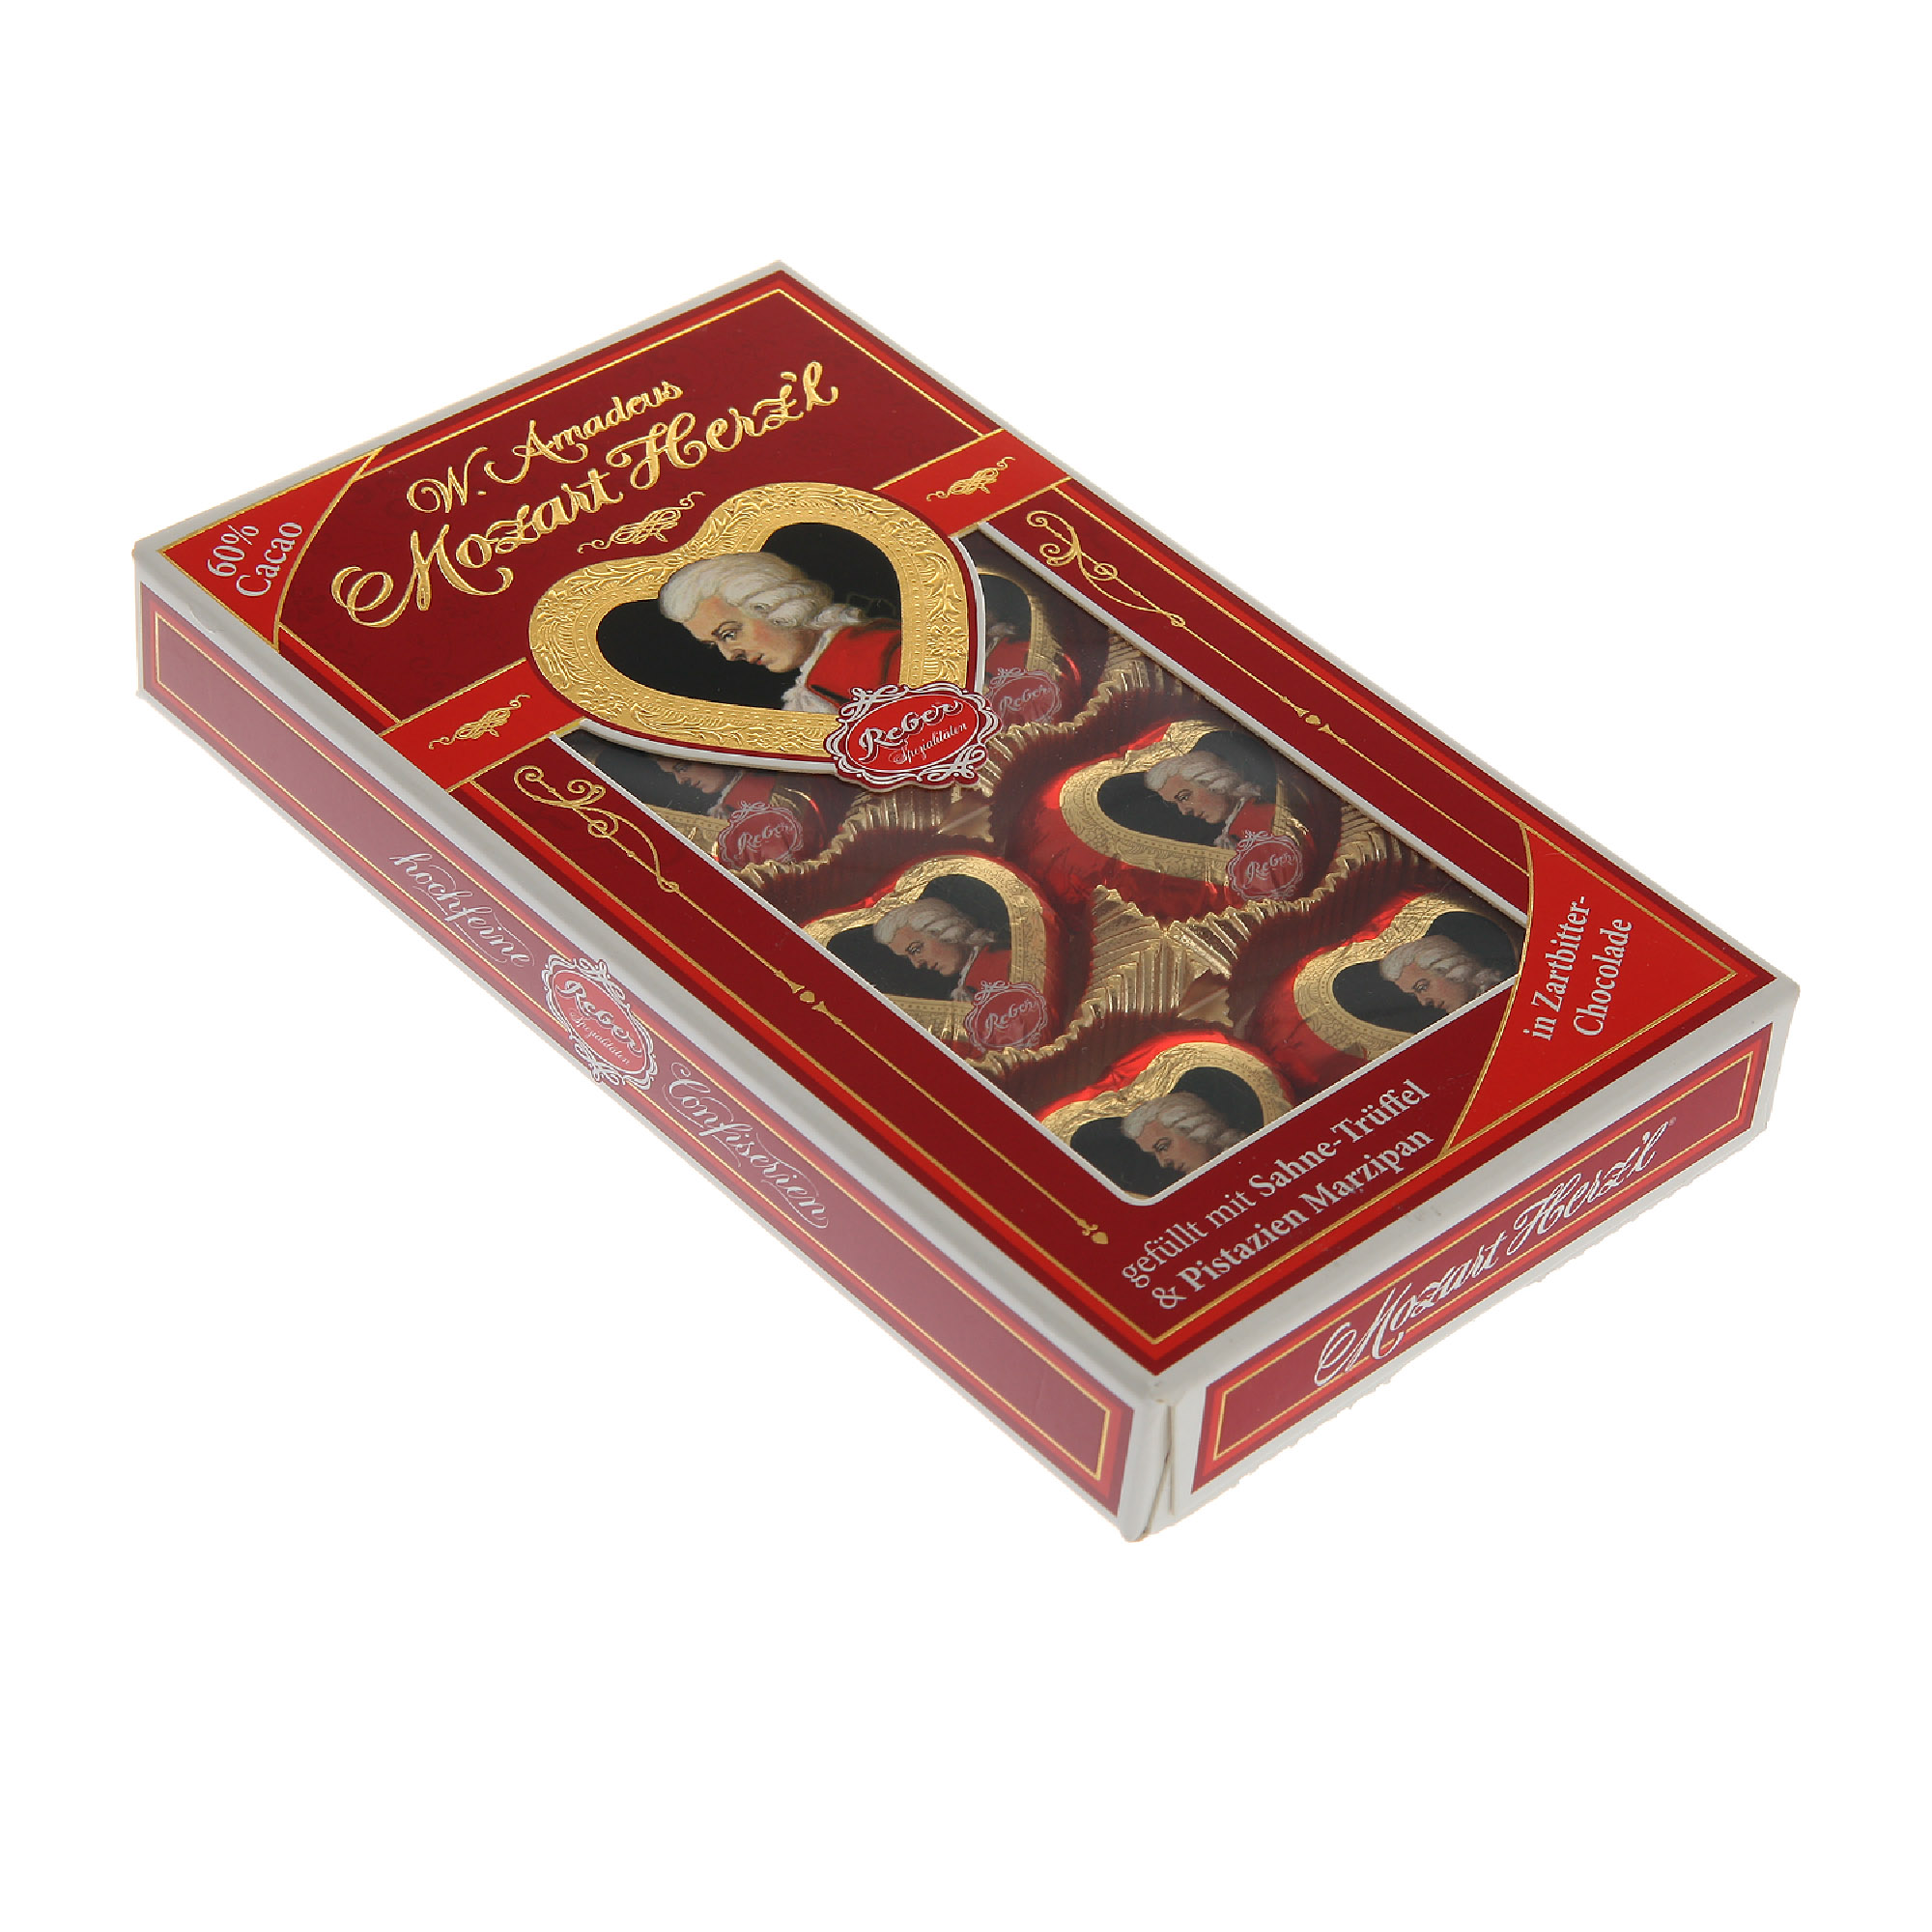 Набор конфет Reber Моцарт мини-сердечки 80 г набор конфет с окном reber моцарт 350 г